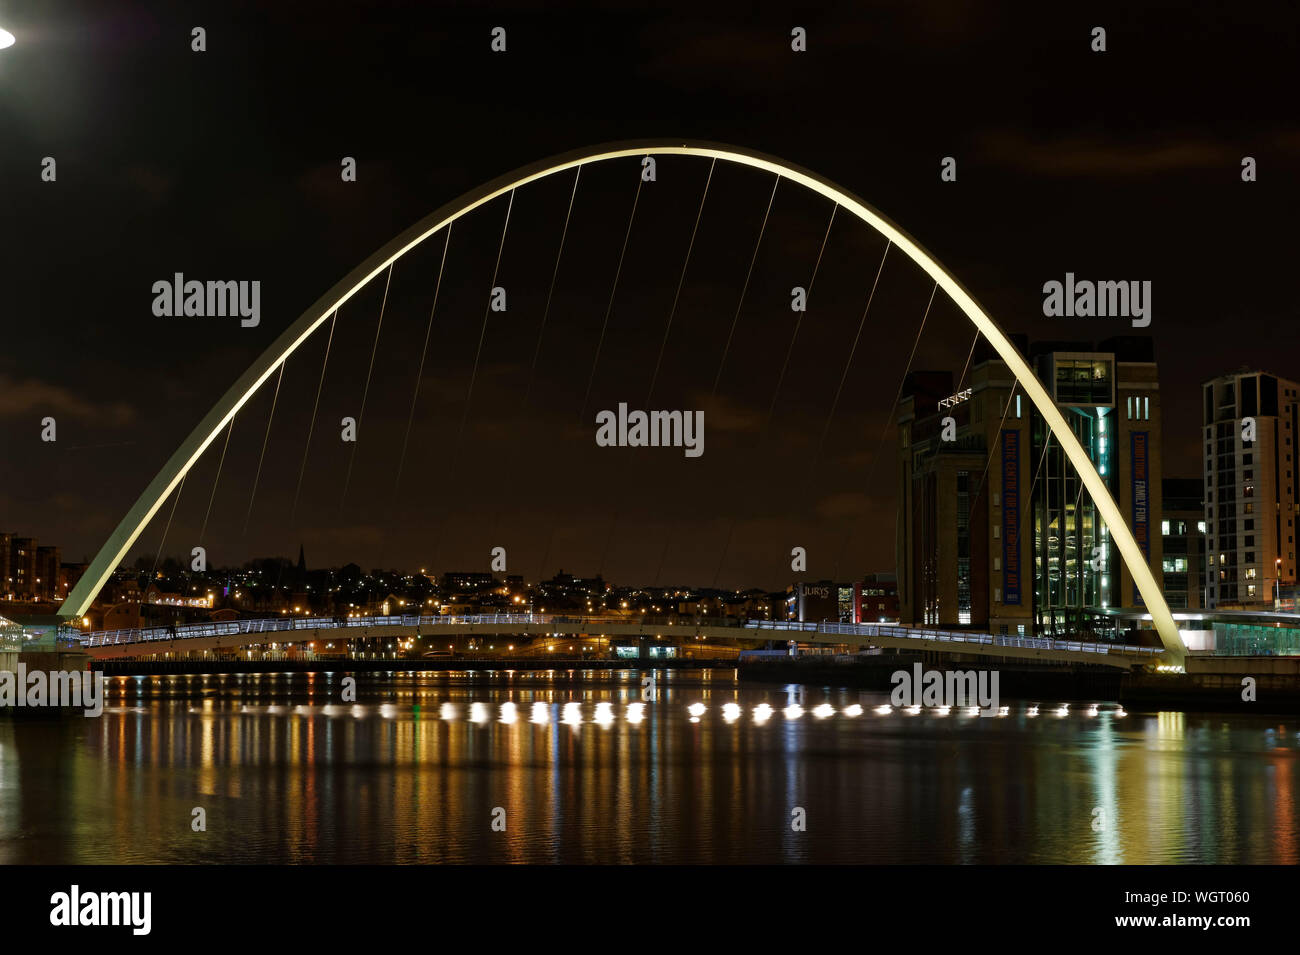 Iluminado puente Gateshead Millennium Bridge sobre el río en la noche Foto de stock